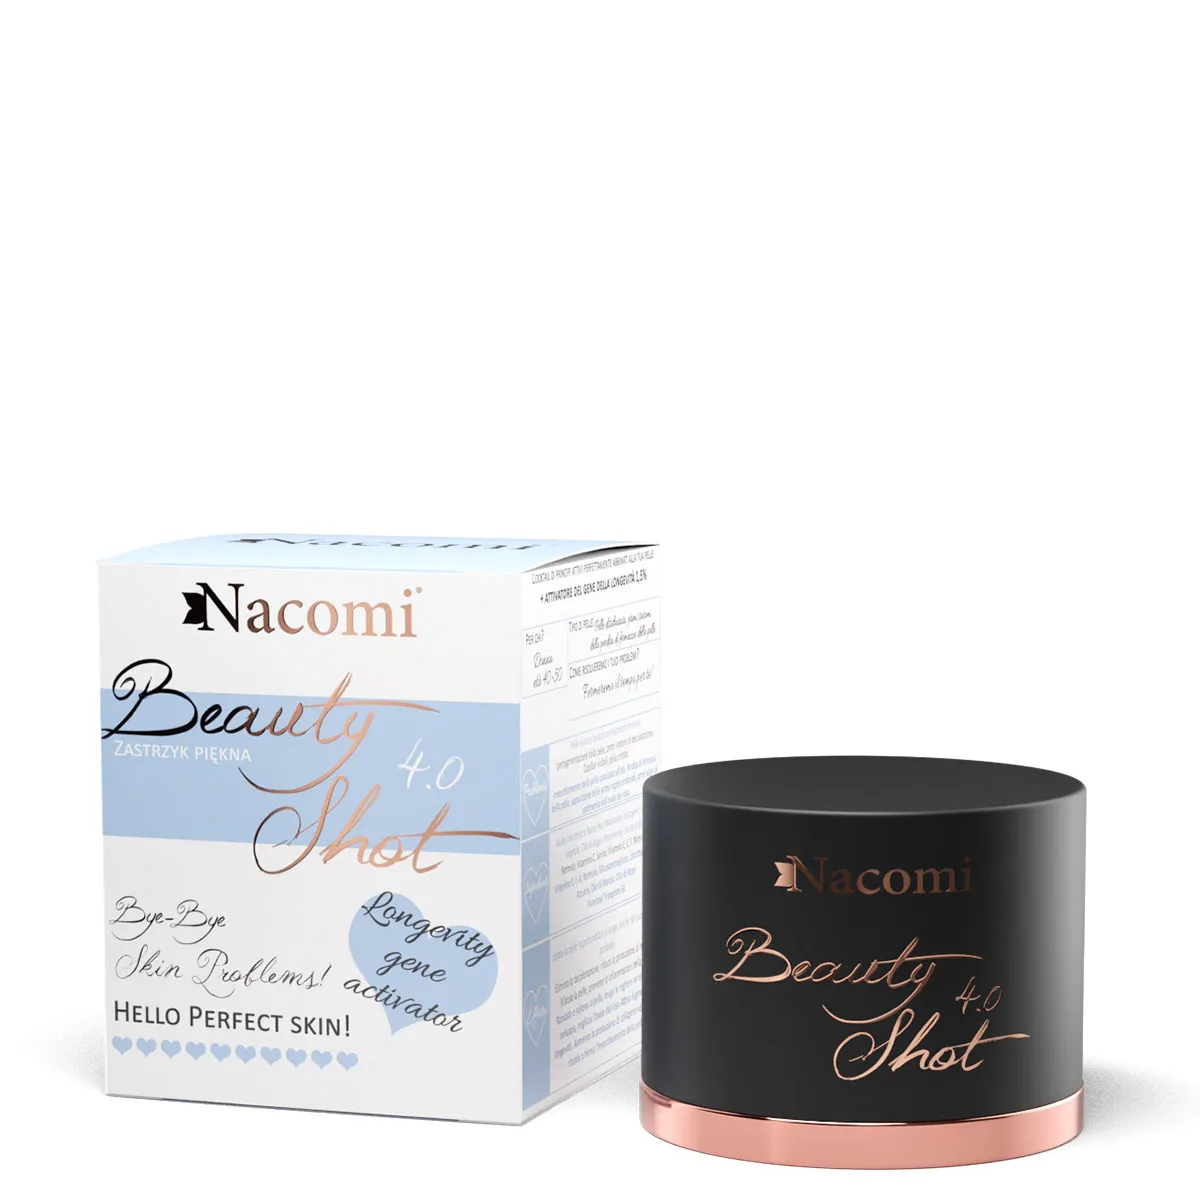 Nacomi, serum Beauty Shot 4.0, 30 ml